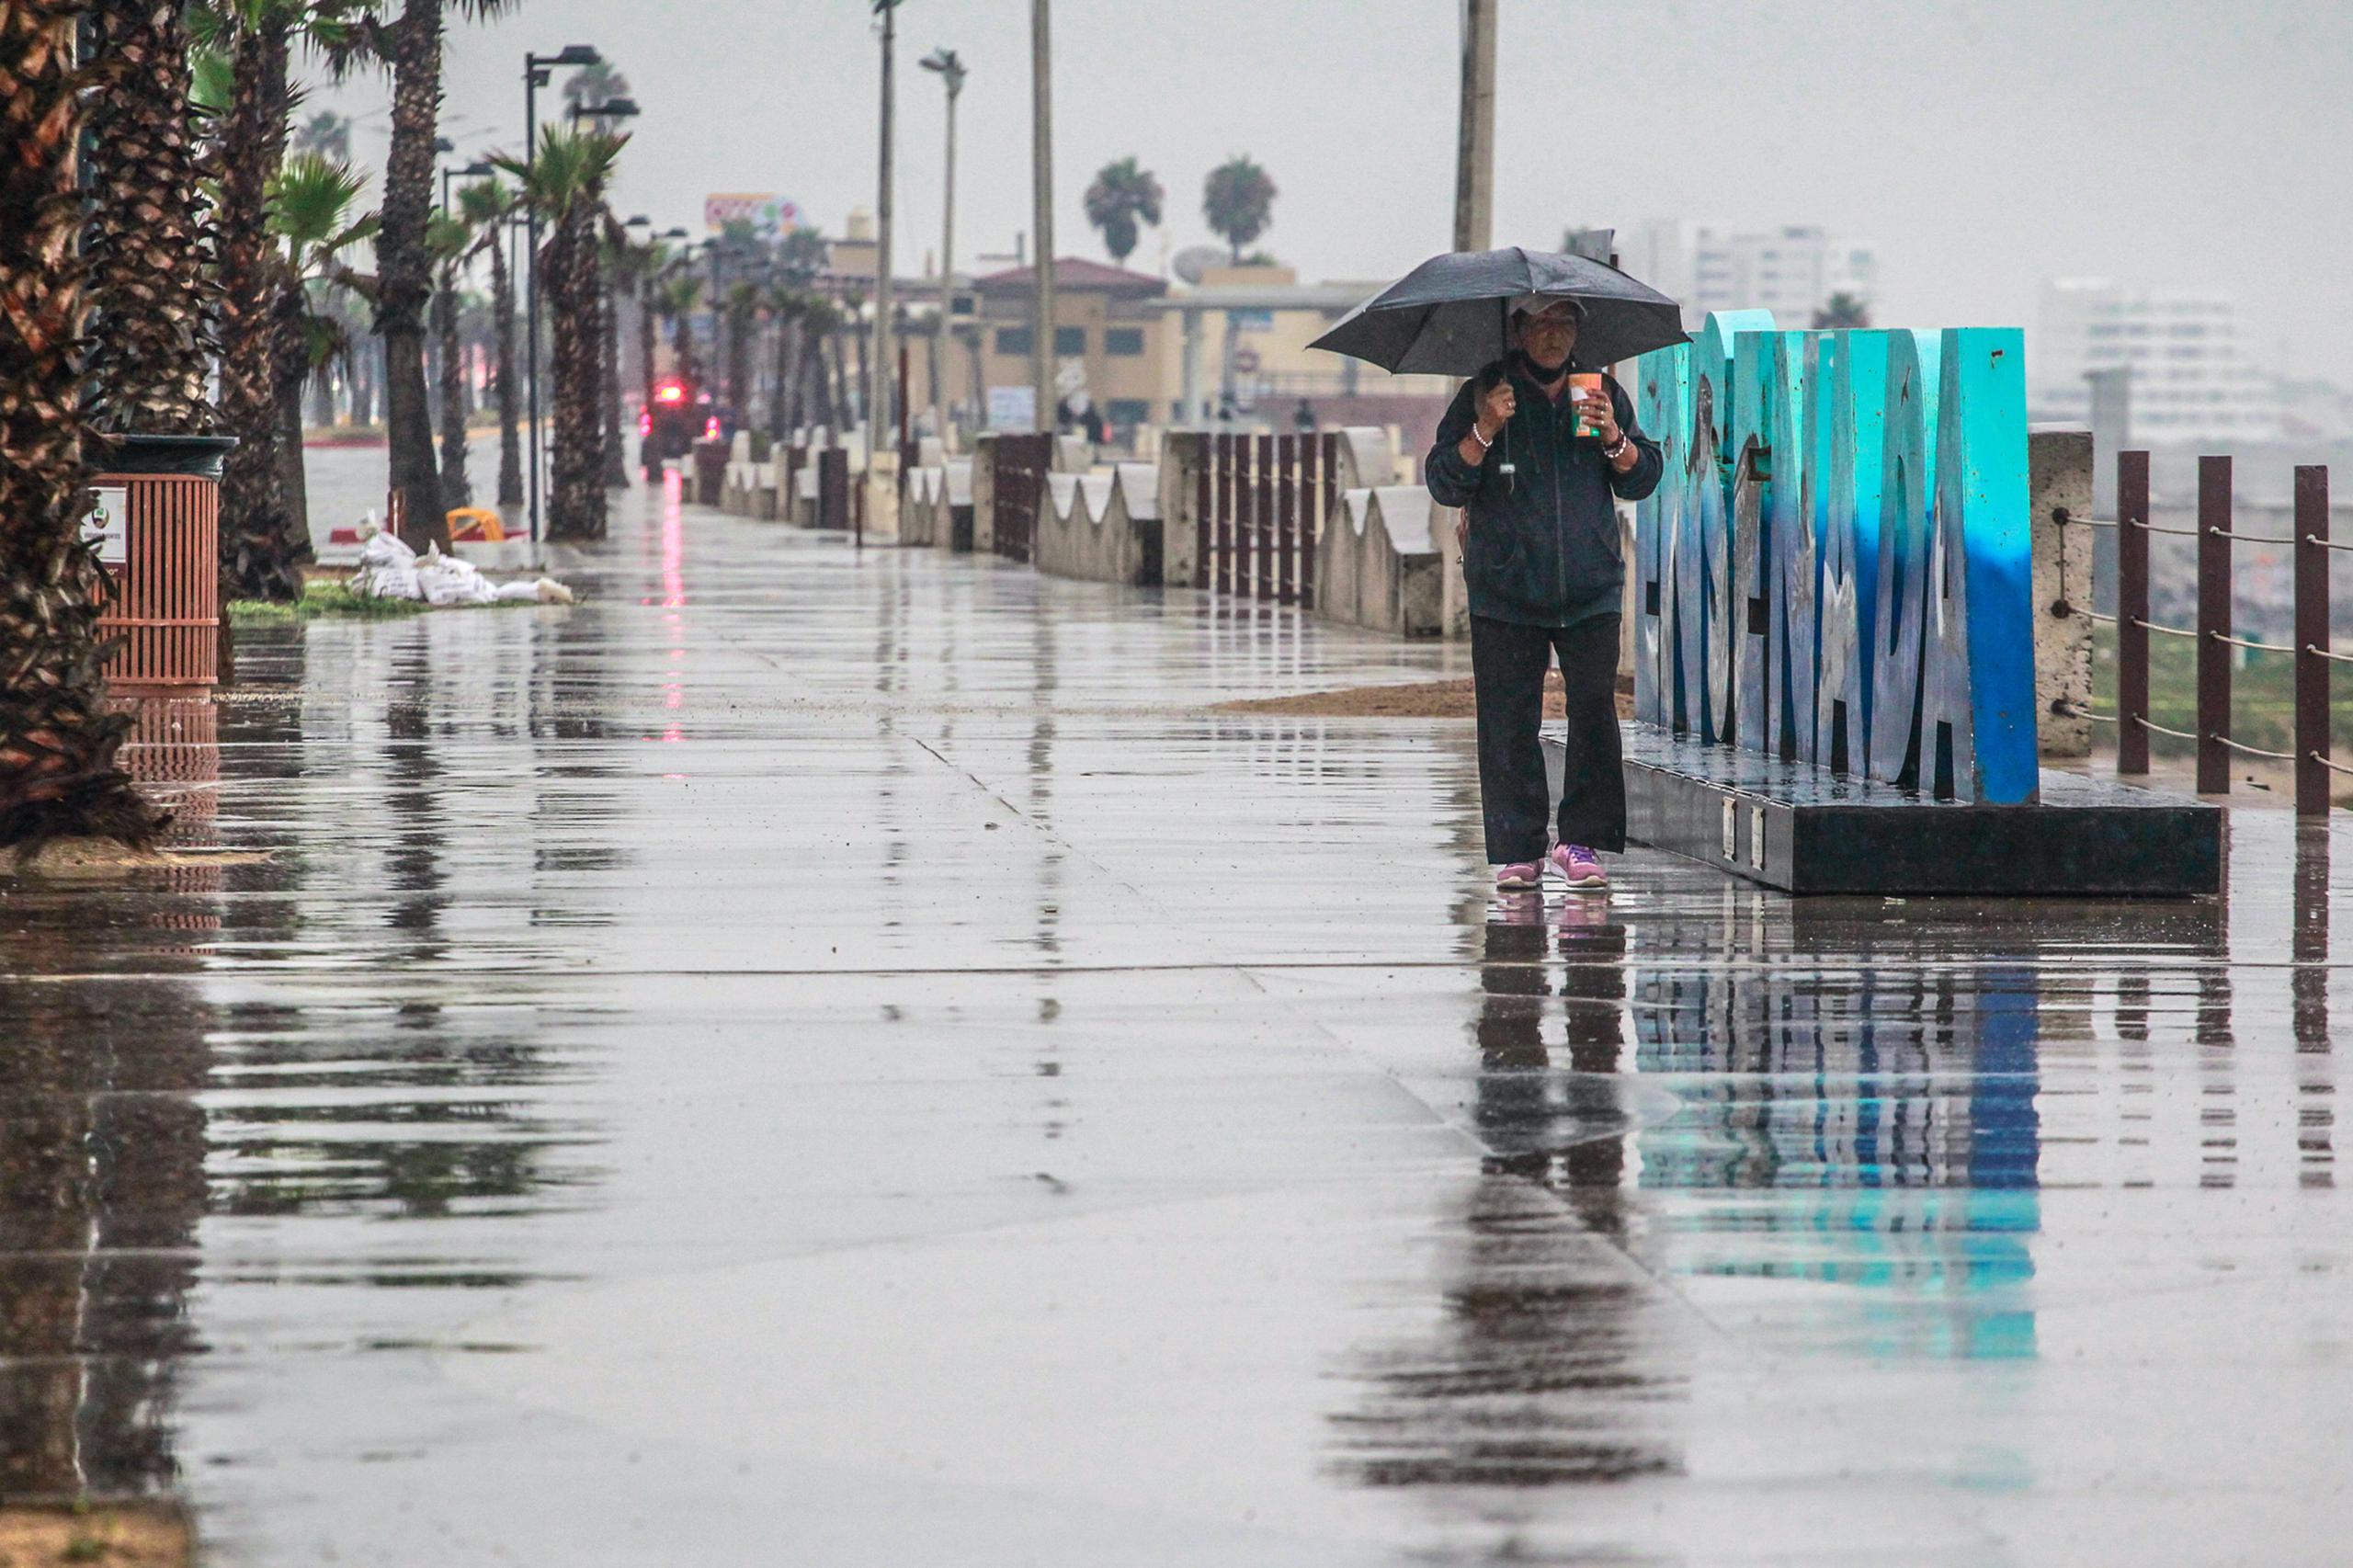 Una persona camina bajo la lluvia en el puerto de Ensenada en Baja California (México). Fotografía de archivo. EFE/Alejandro Zepeda
